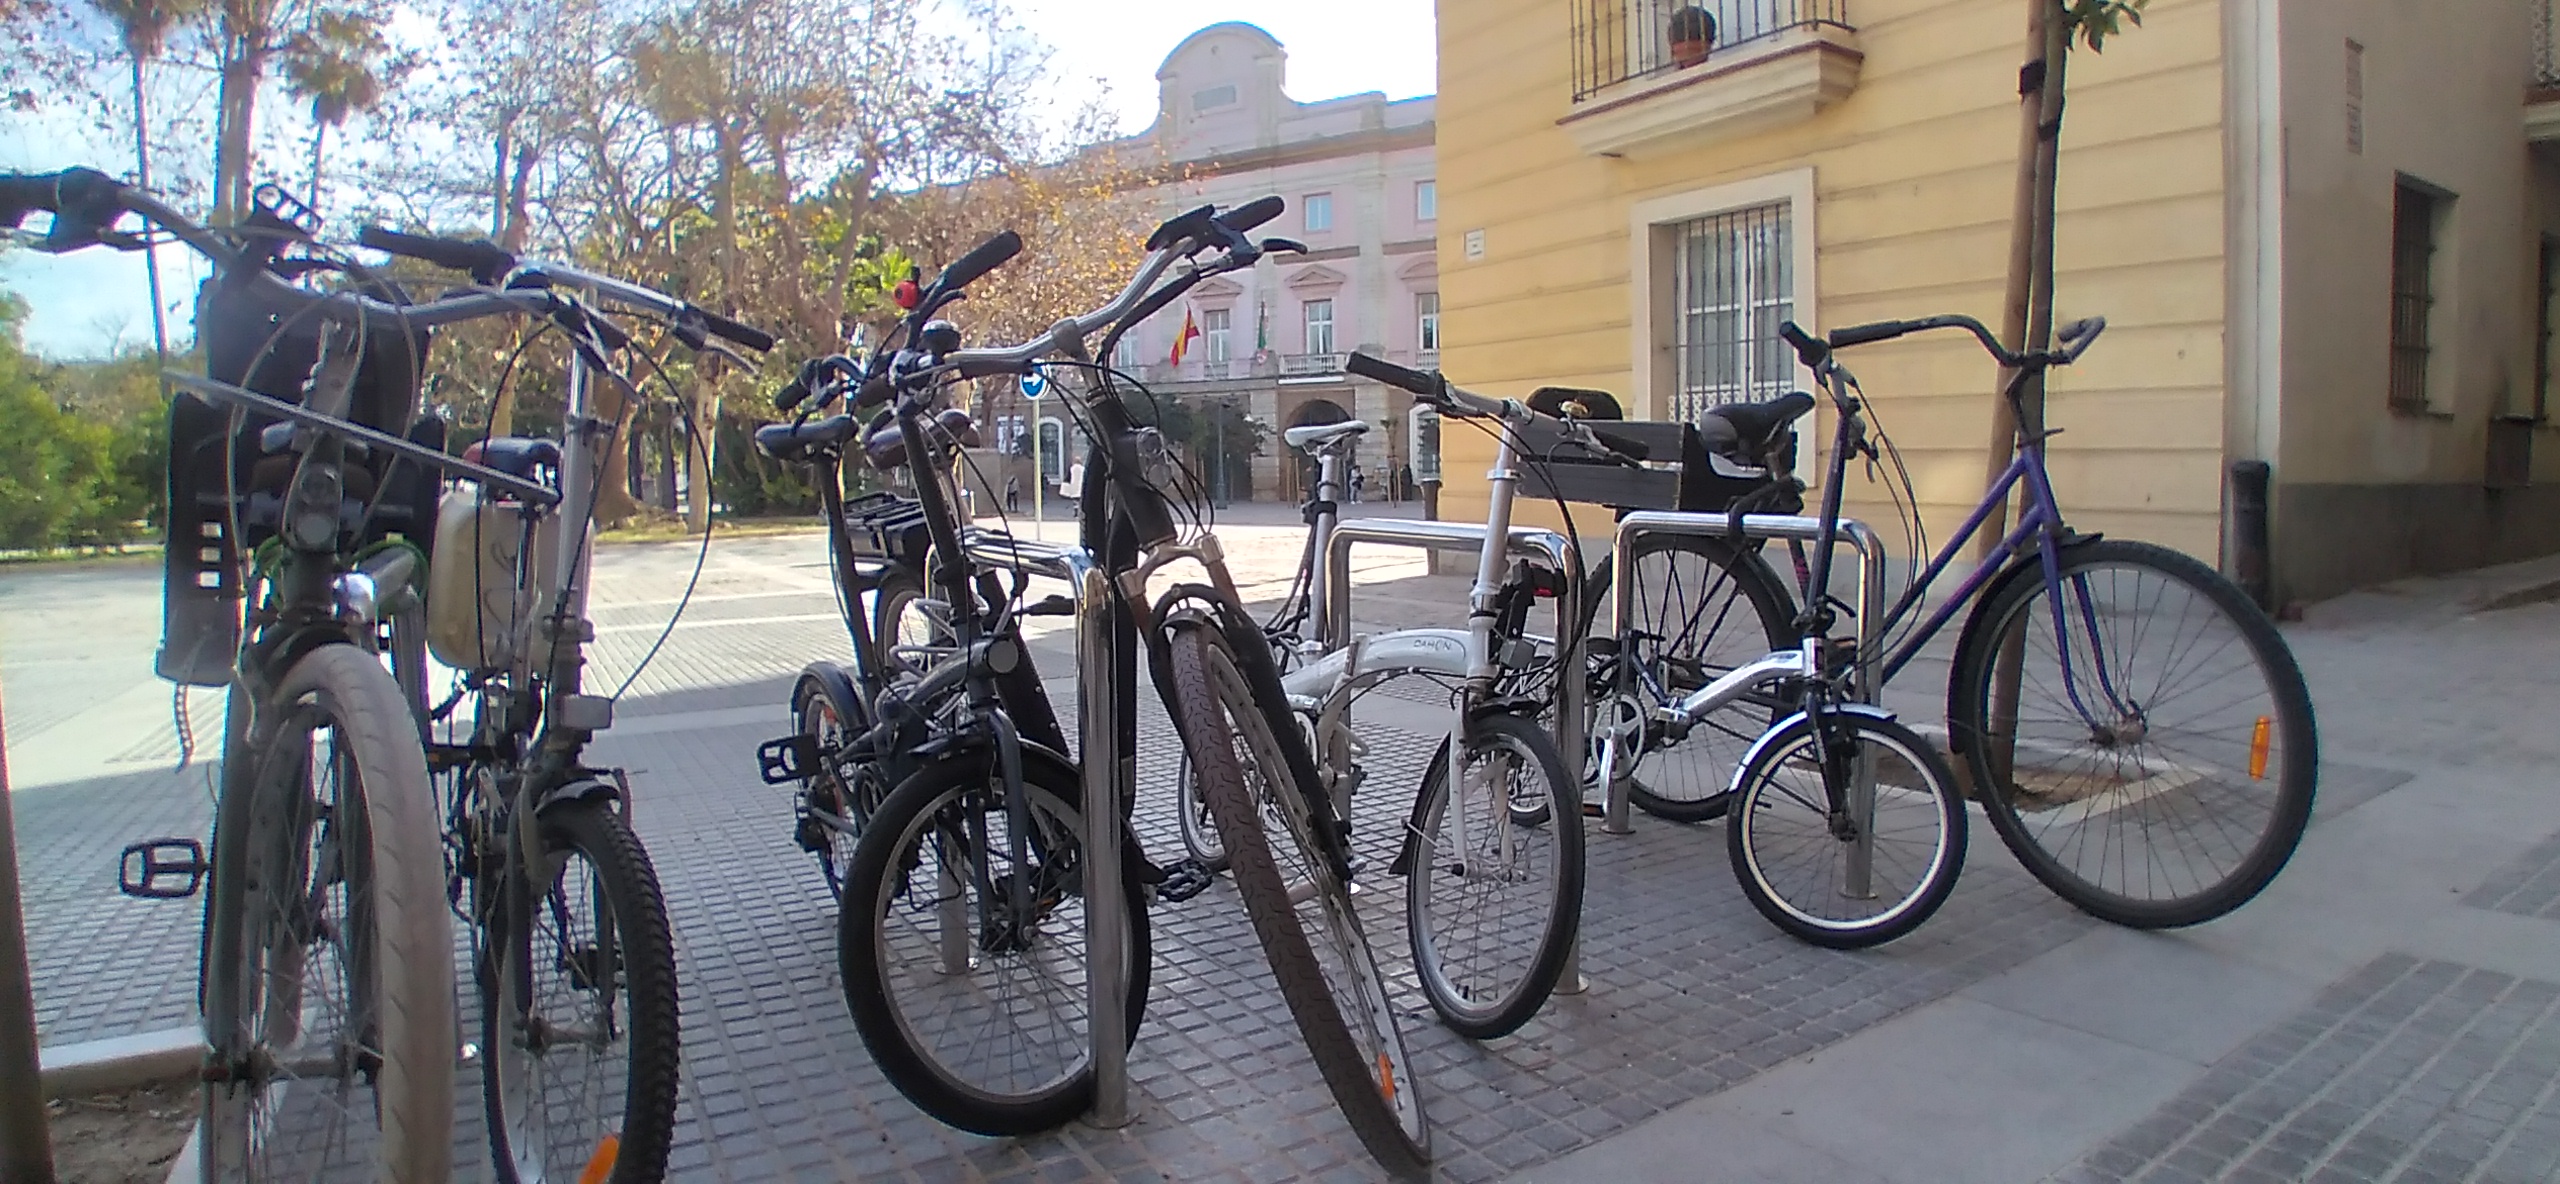 Bicicletas aparcadas en Cádiz